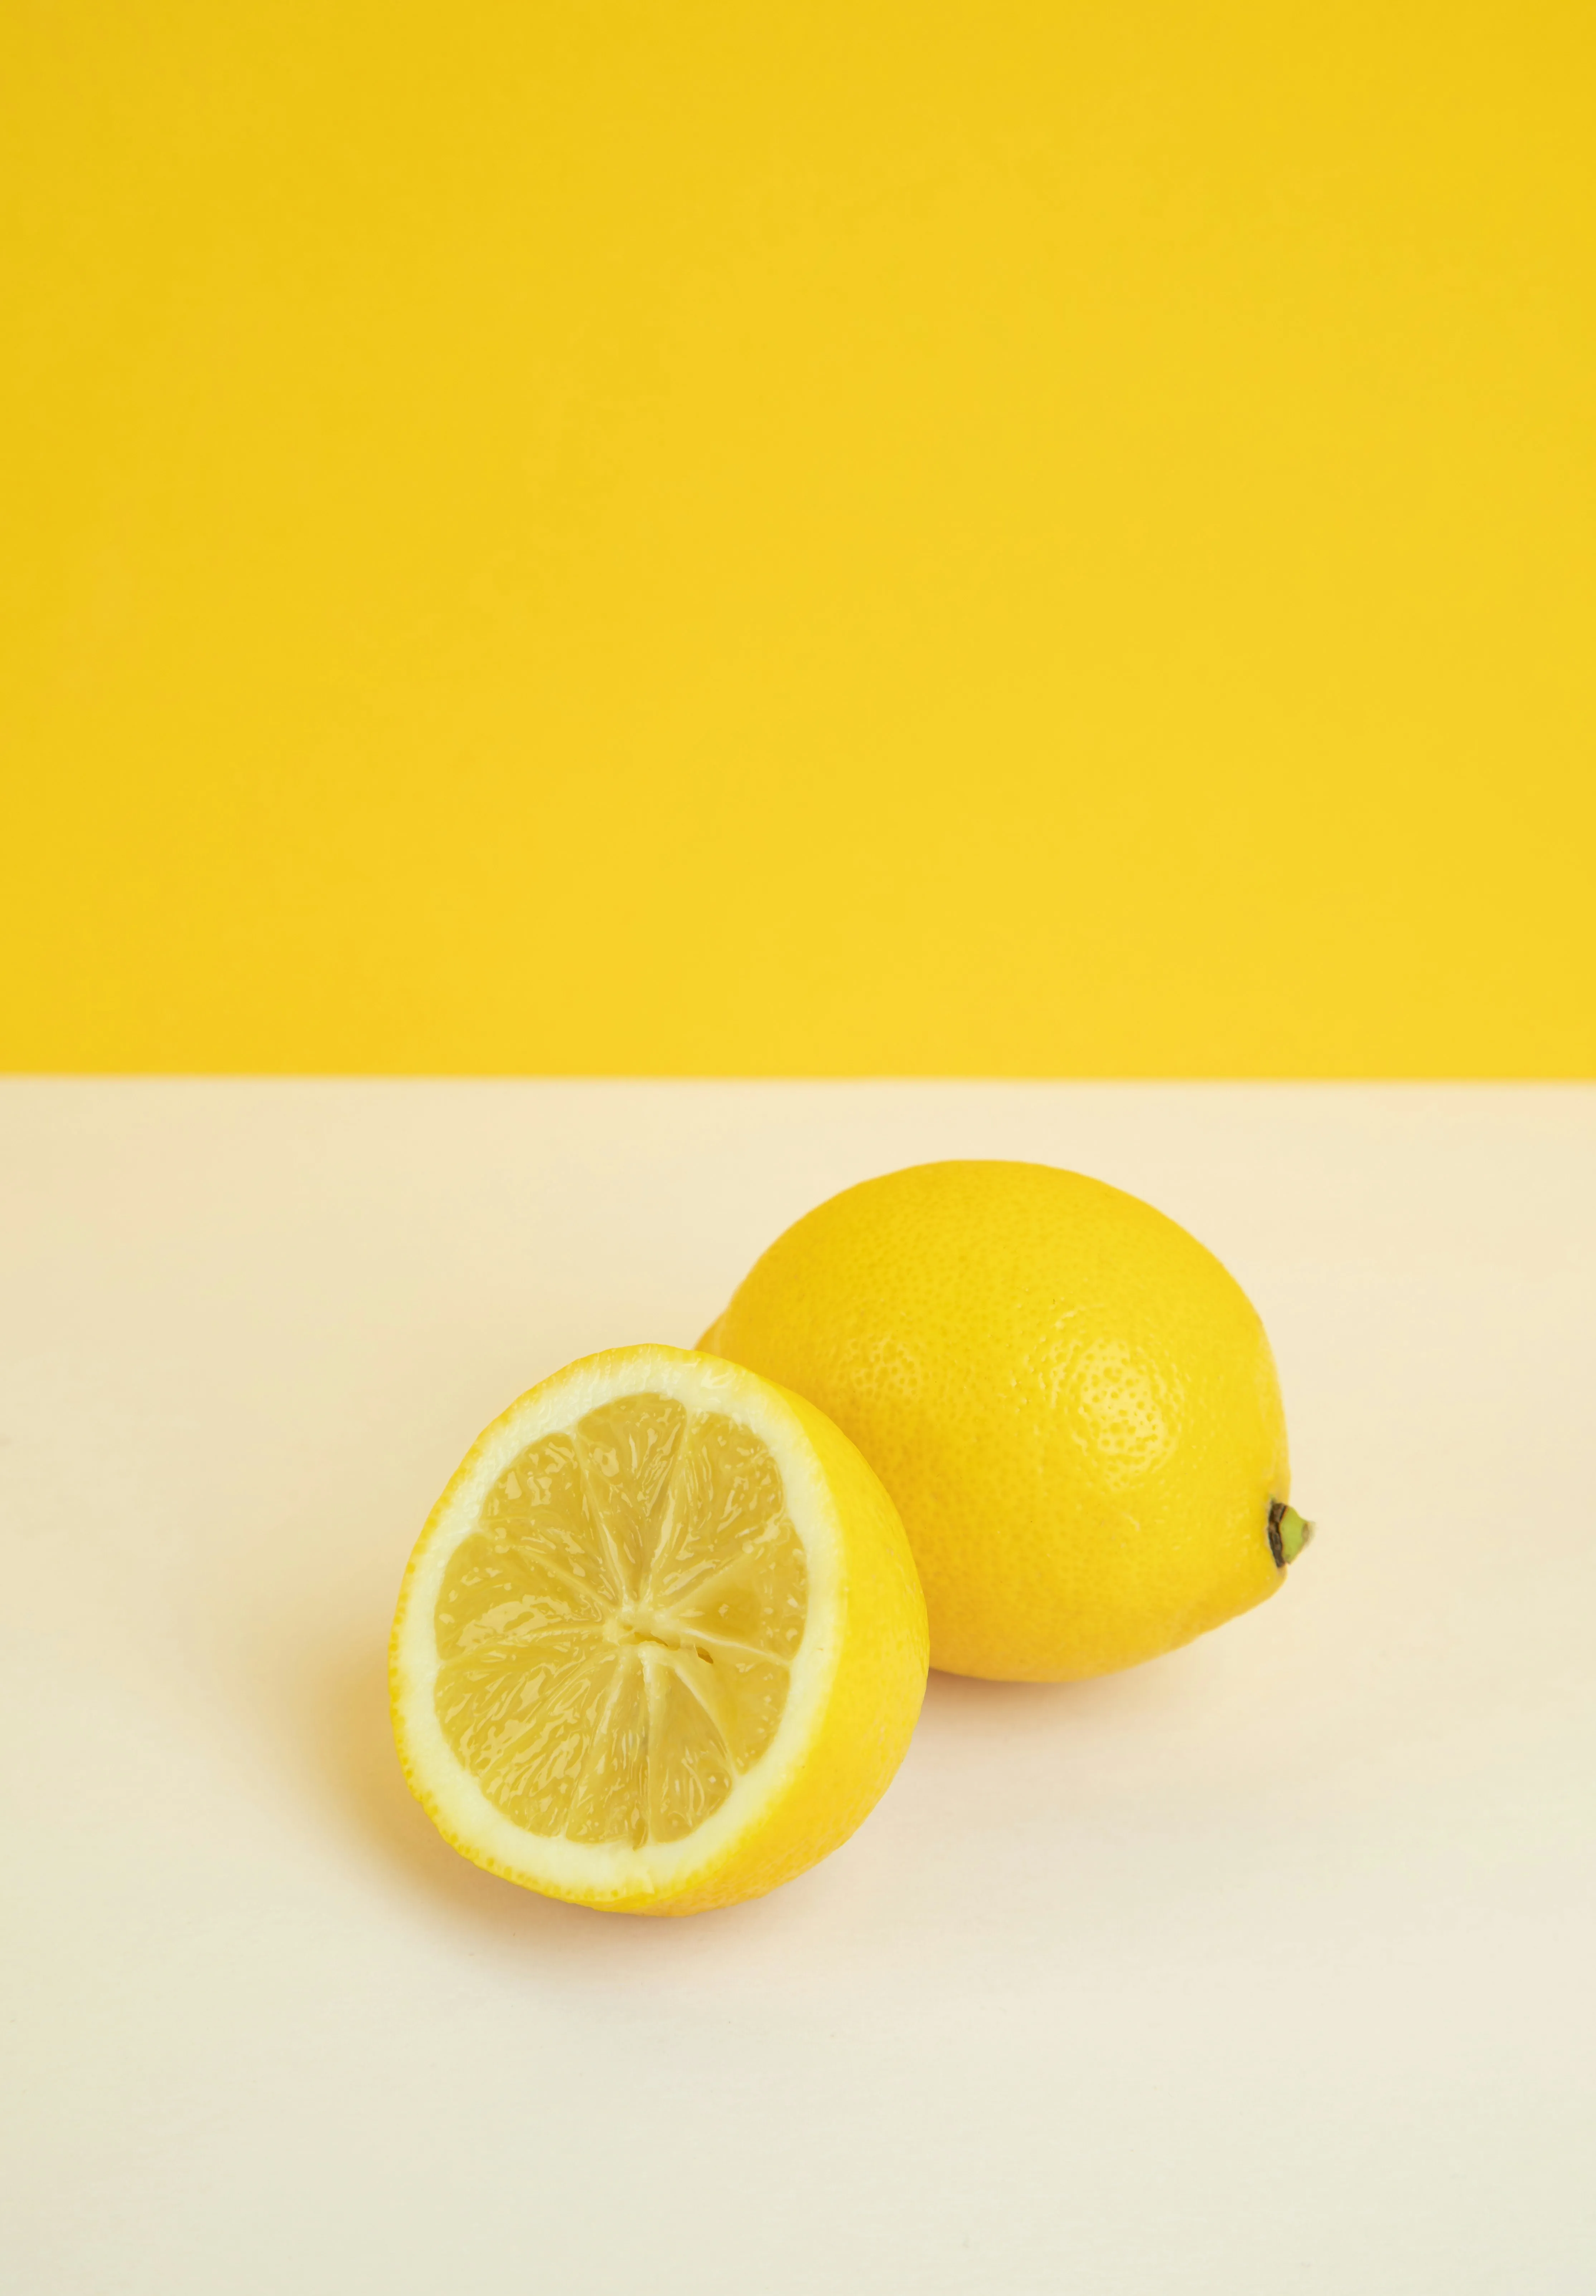 Лимонный гайд: как выбрать самые сочные плоды для чая и других блюд